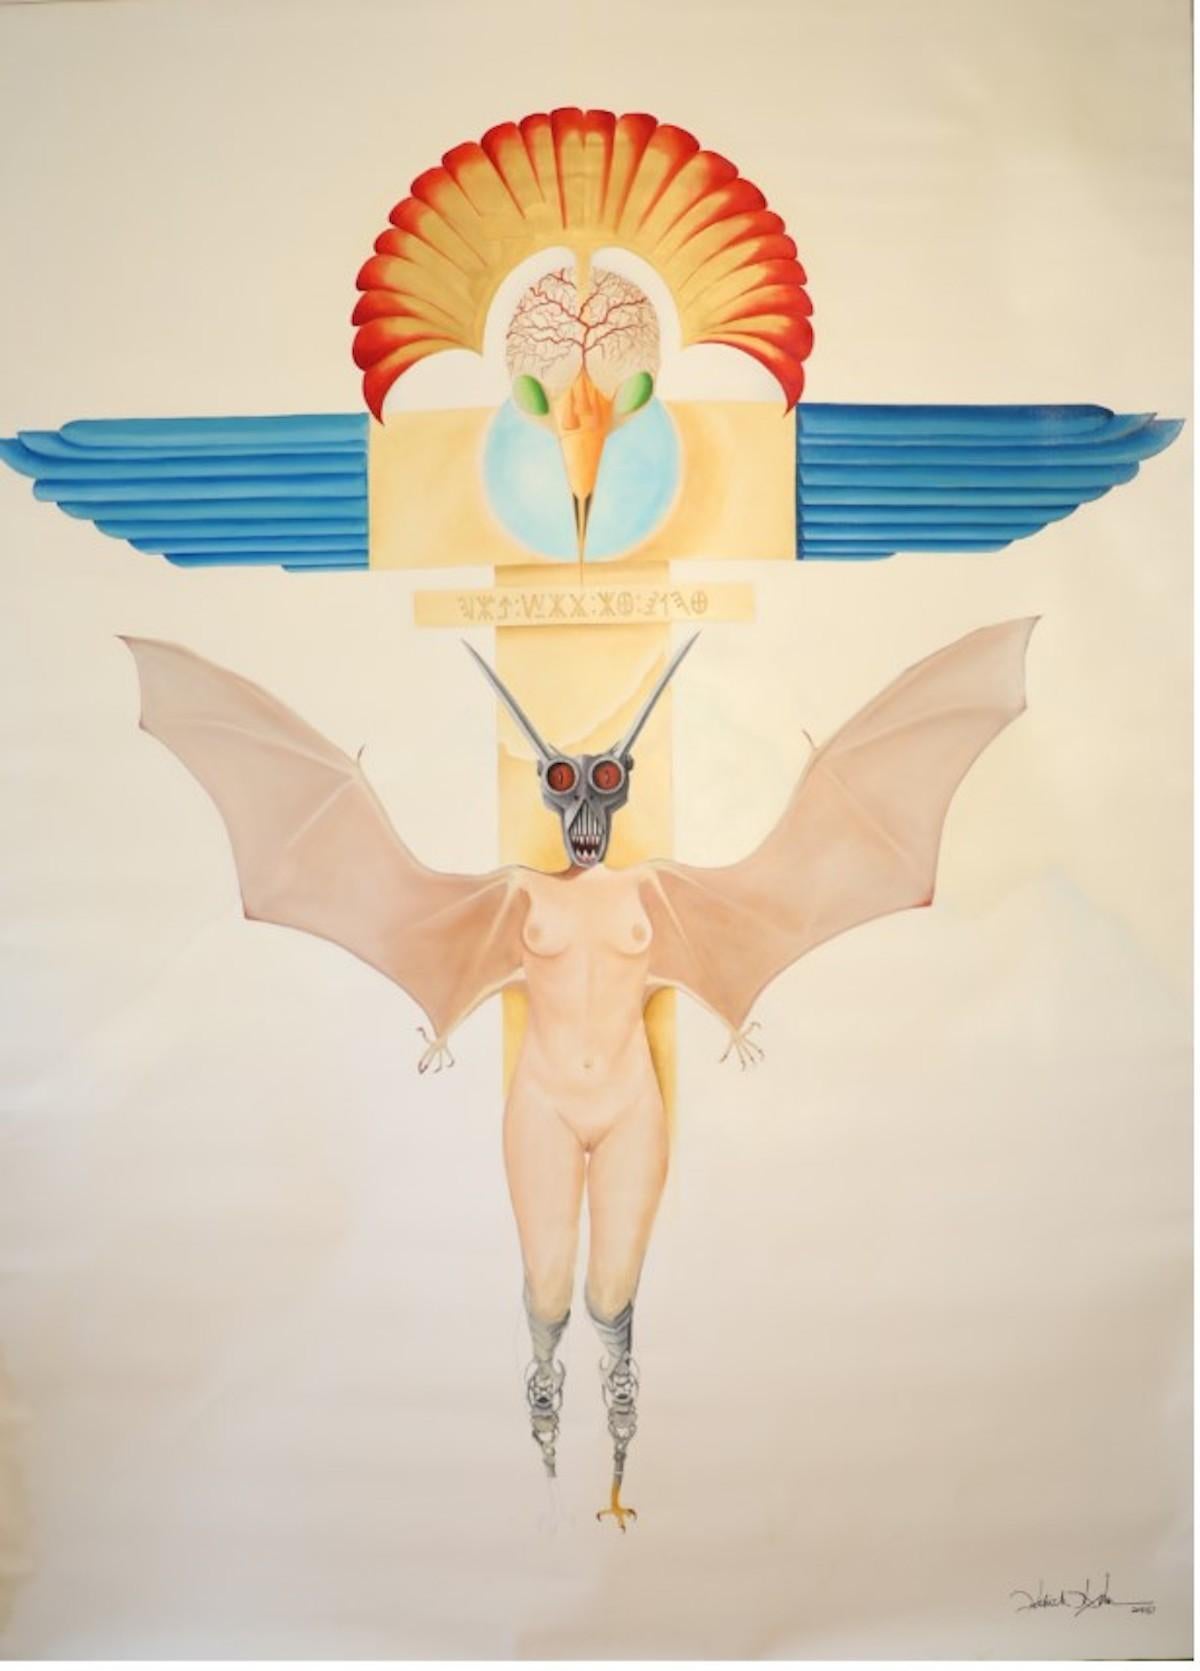 Patrick Faure Abstract Painting – Wings of Fascism - Öl auf Leinwand - Zeitgenössisches Gemälde